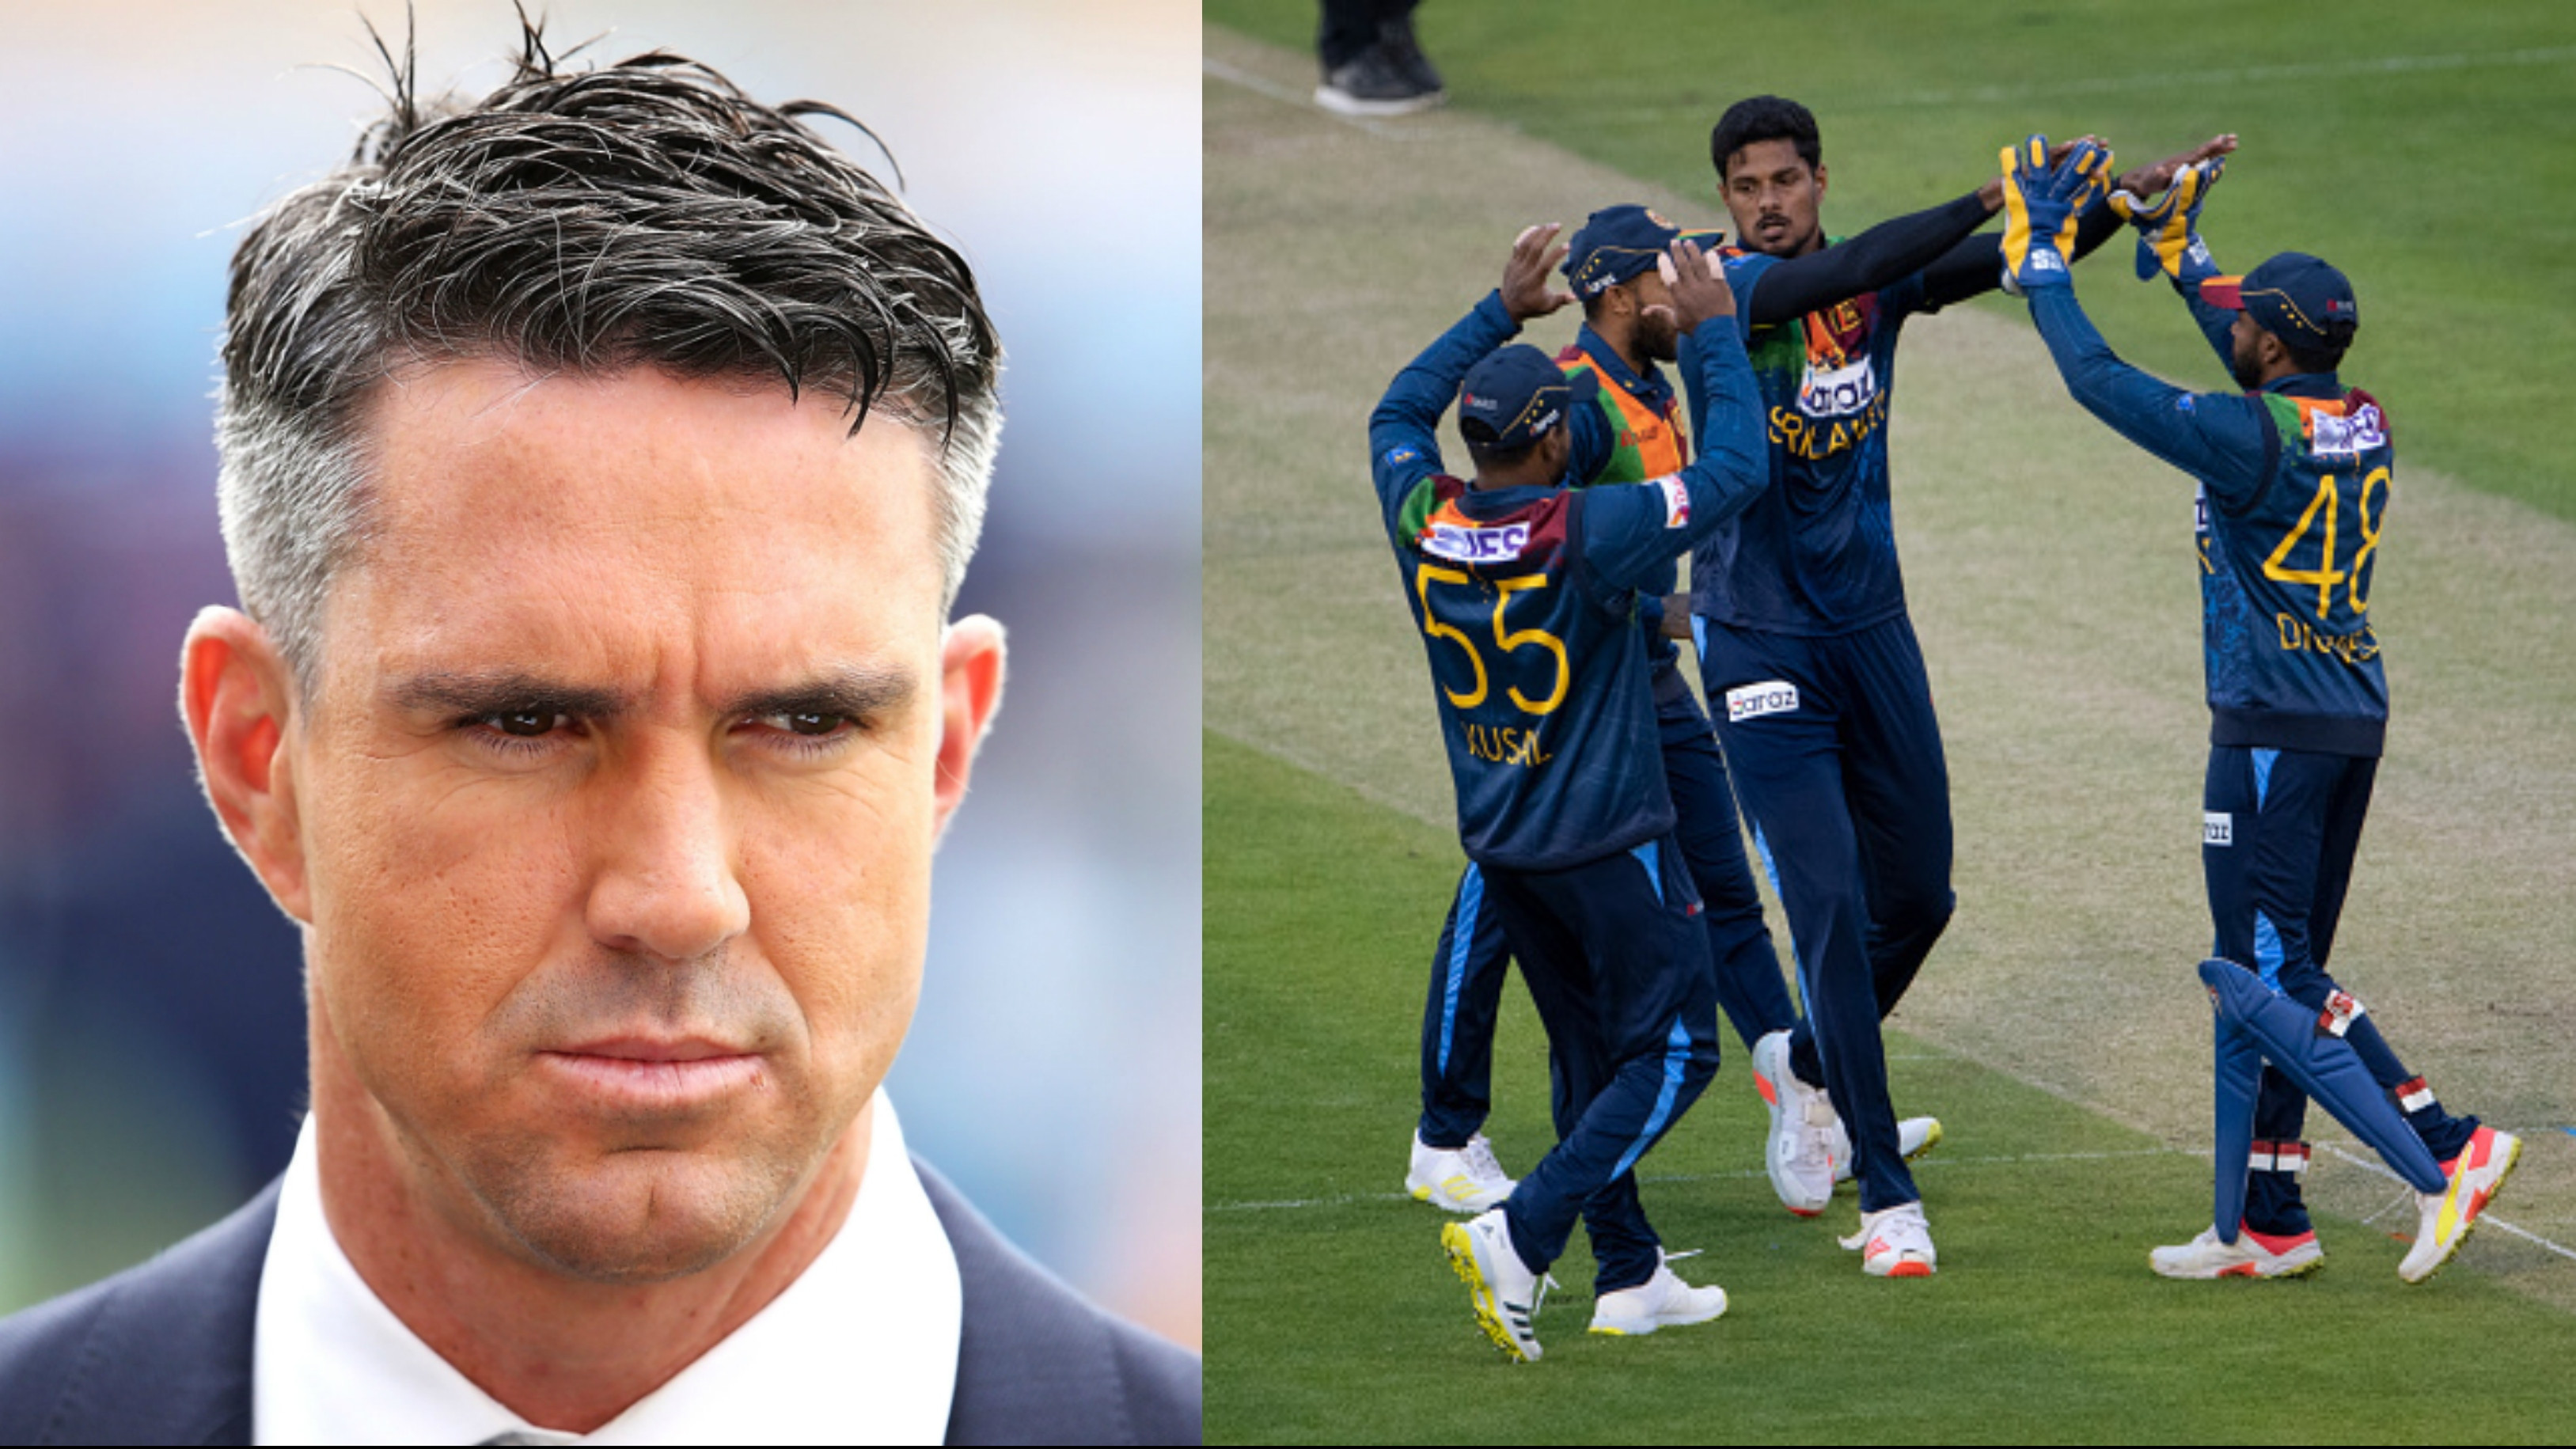 ENG v SL 2021: Kevin Pietersen wonders what’s happened to Sri Lanka cricket after demolition vs England